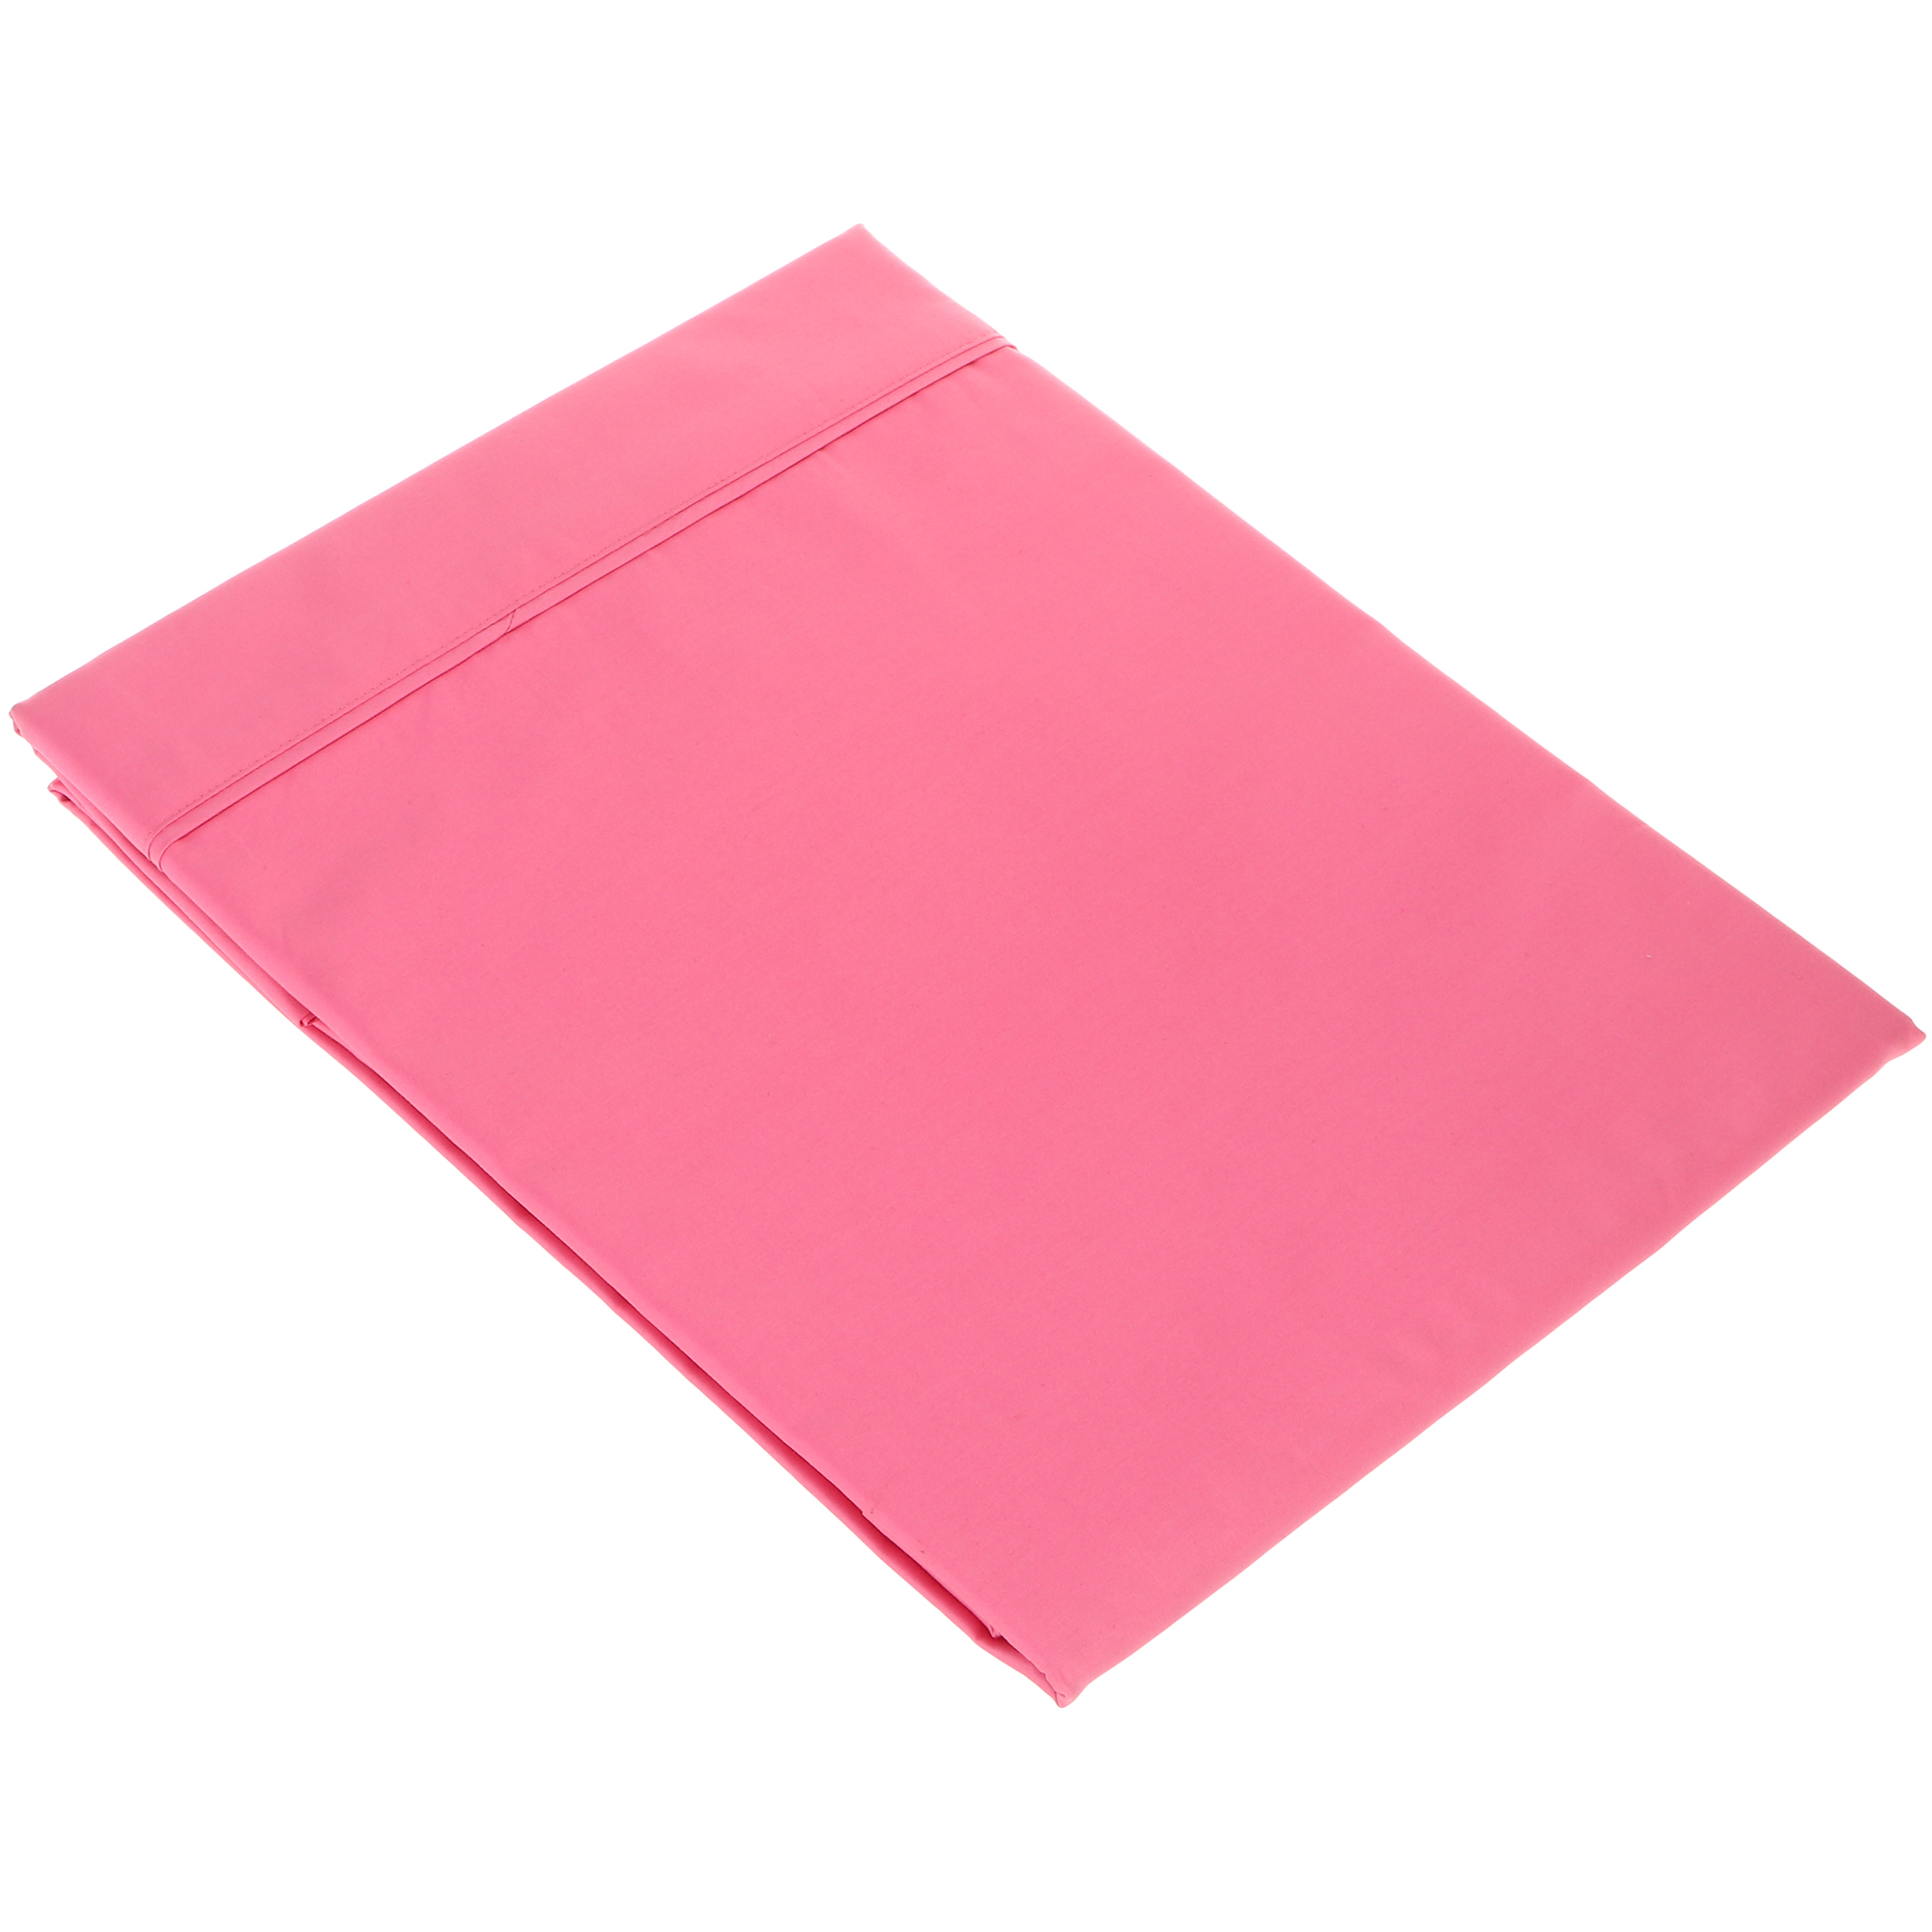 Простыня Вонне-траум Chambord Love розовая 180х250 см